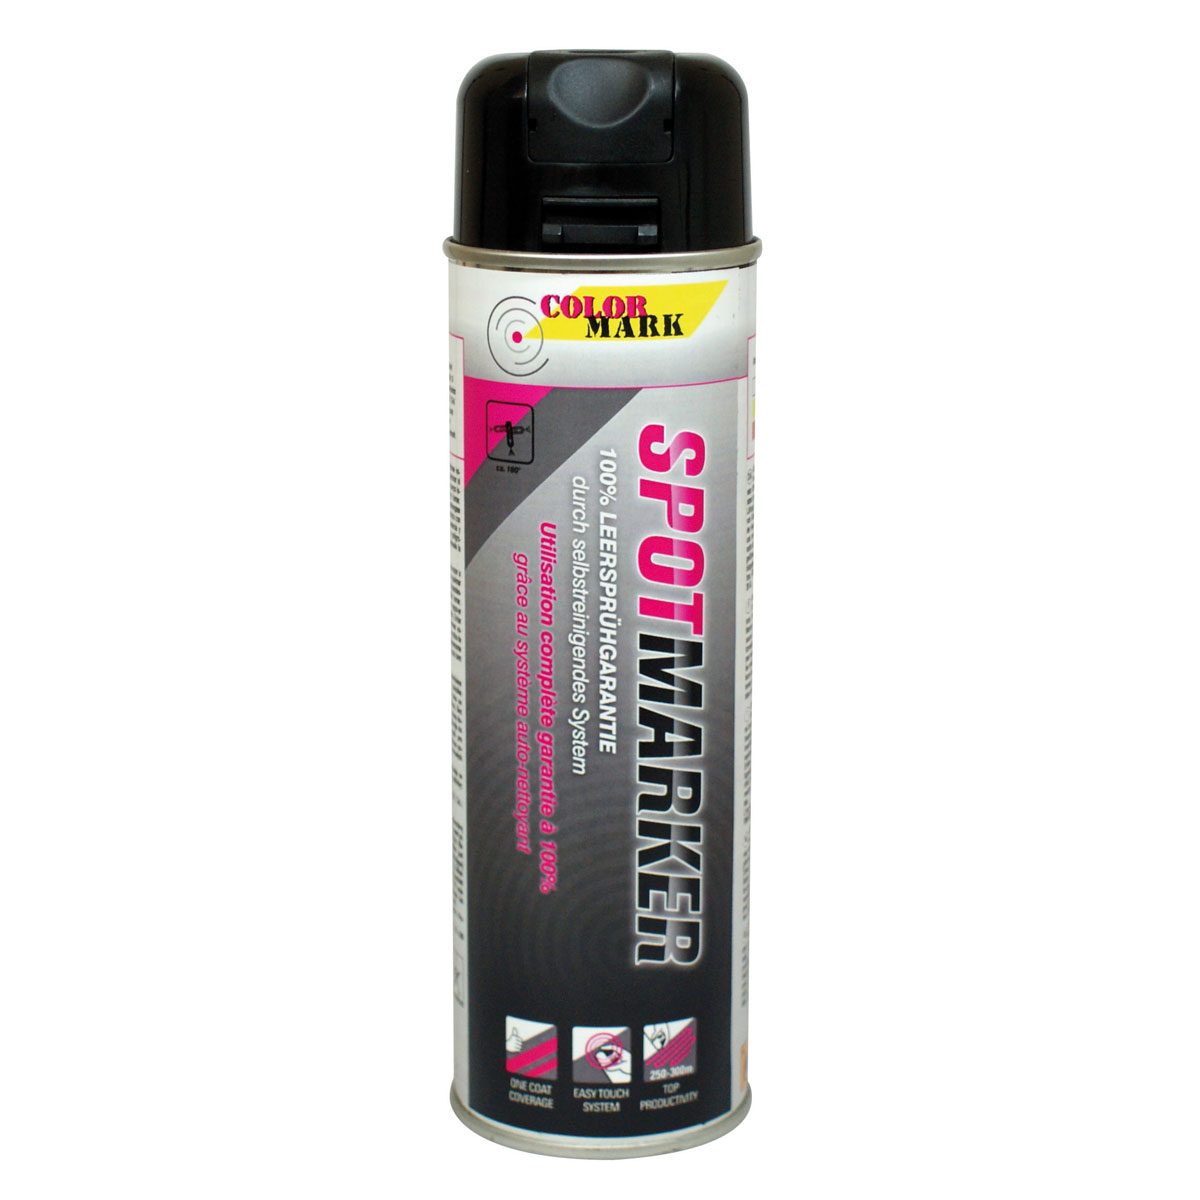 Markierfarbe - Colormark - Spotmarker schwarz mit Sicherheitskappe, 500 ml